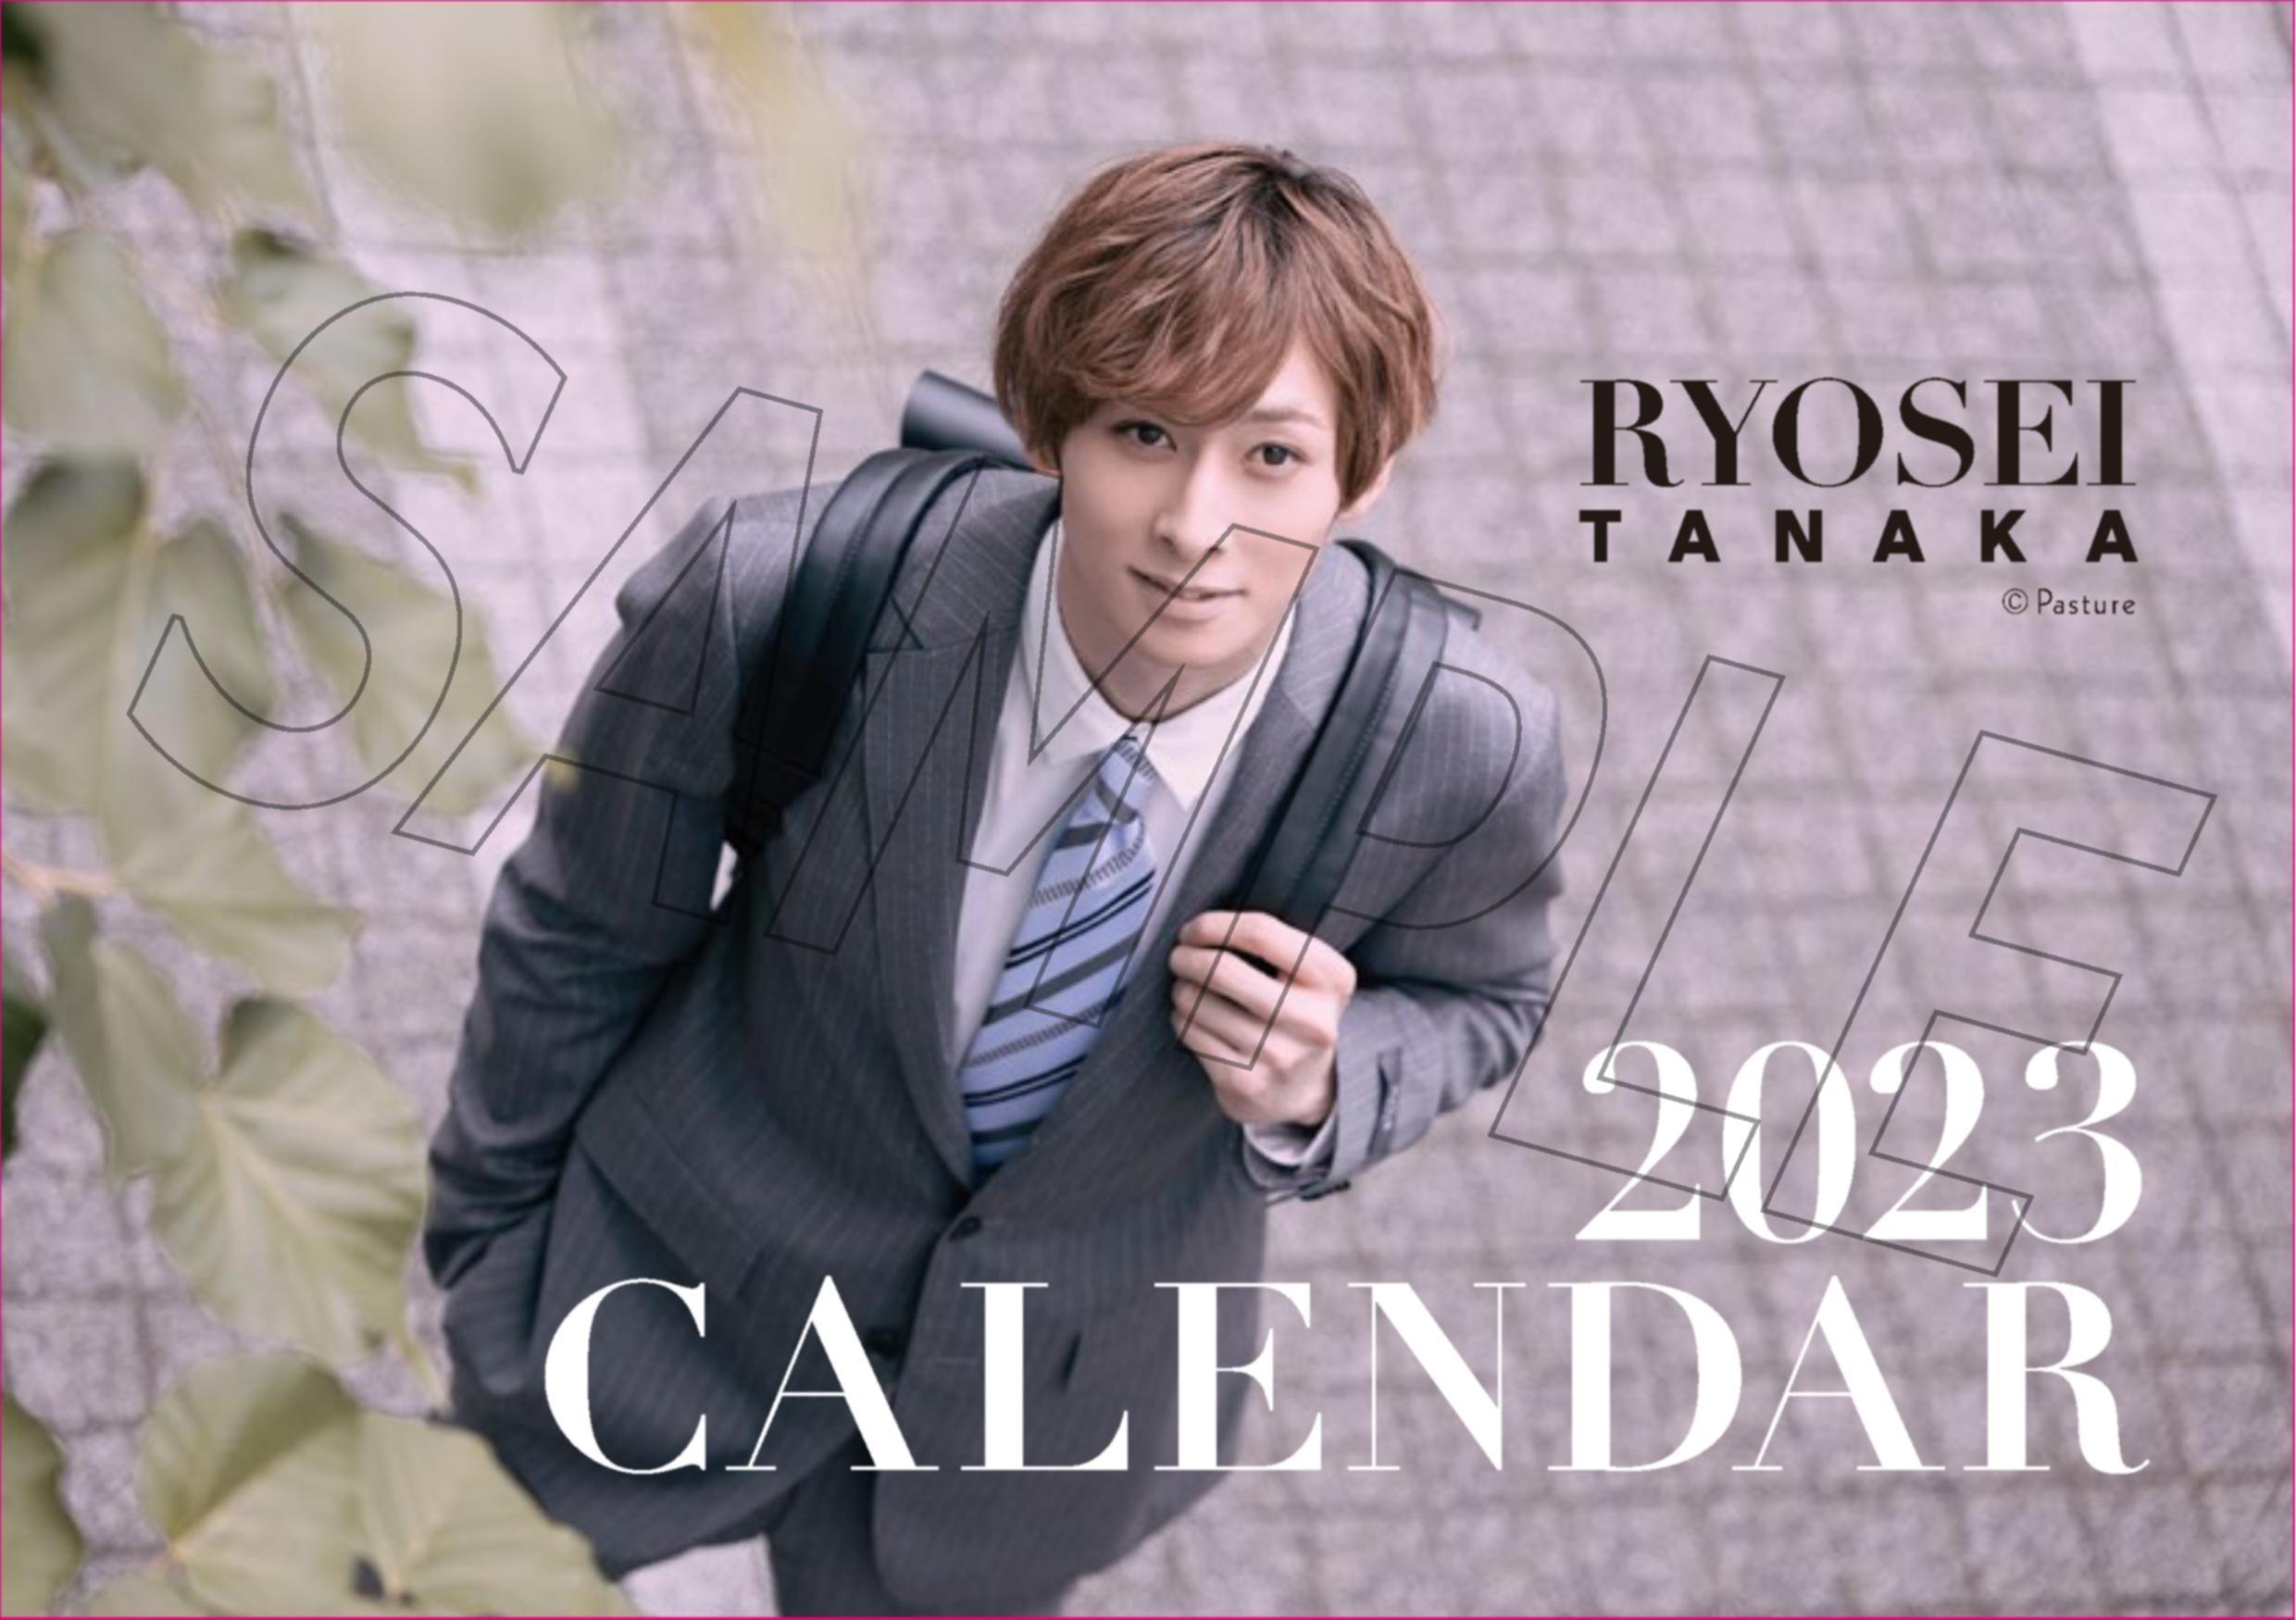 【有料会員先行販売】田中涼星 2023カレンダー・通常版